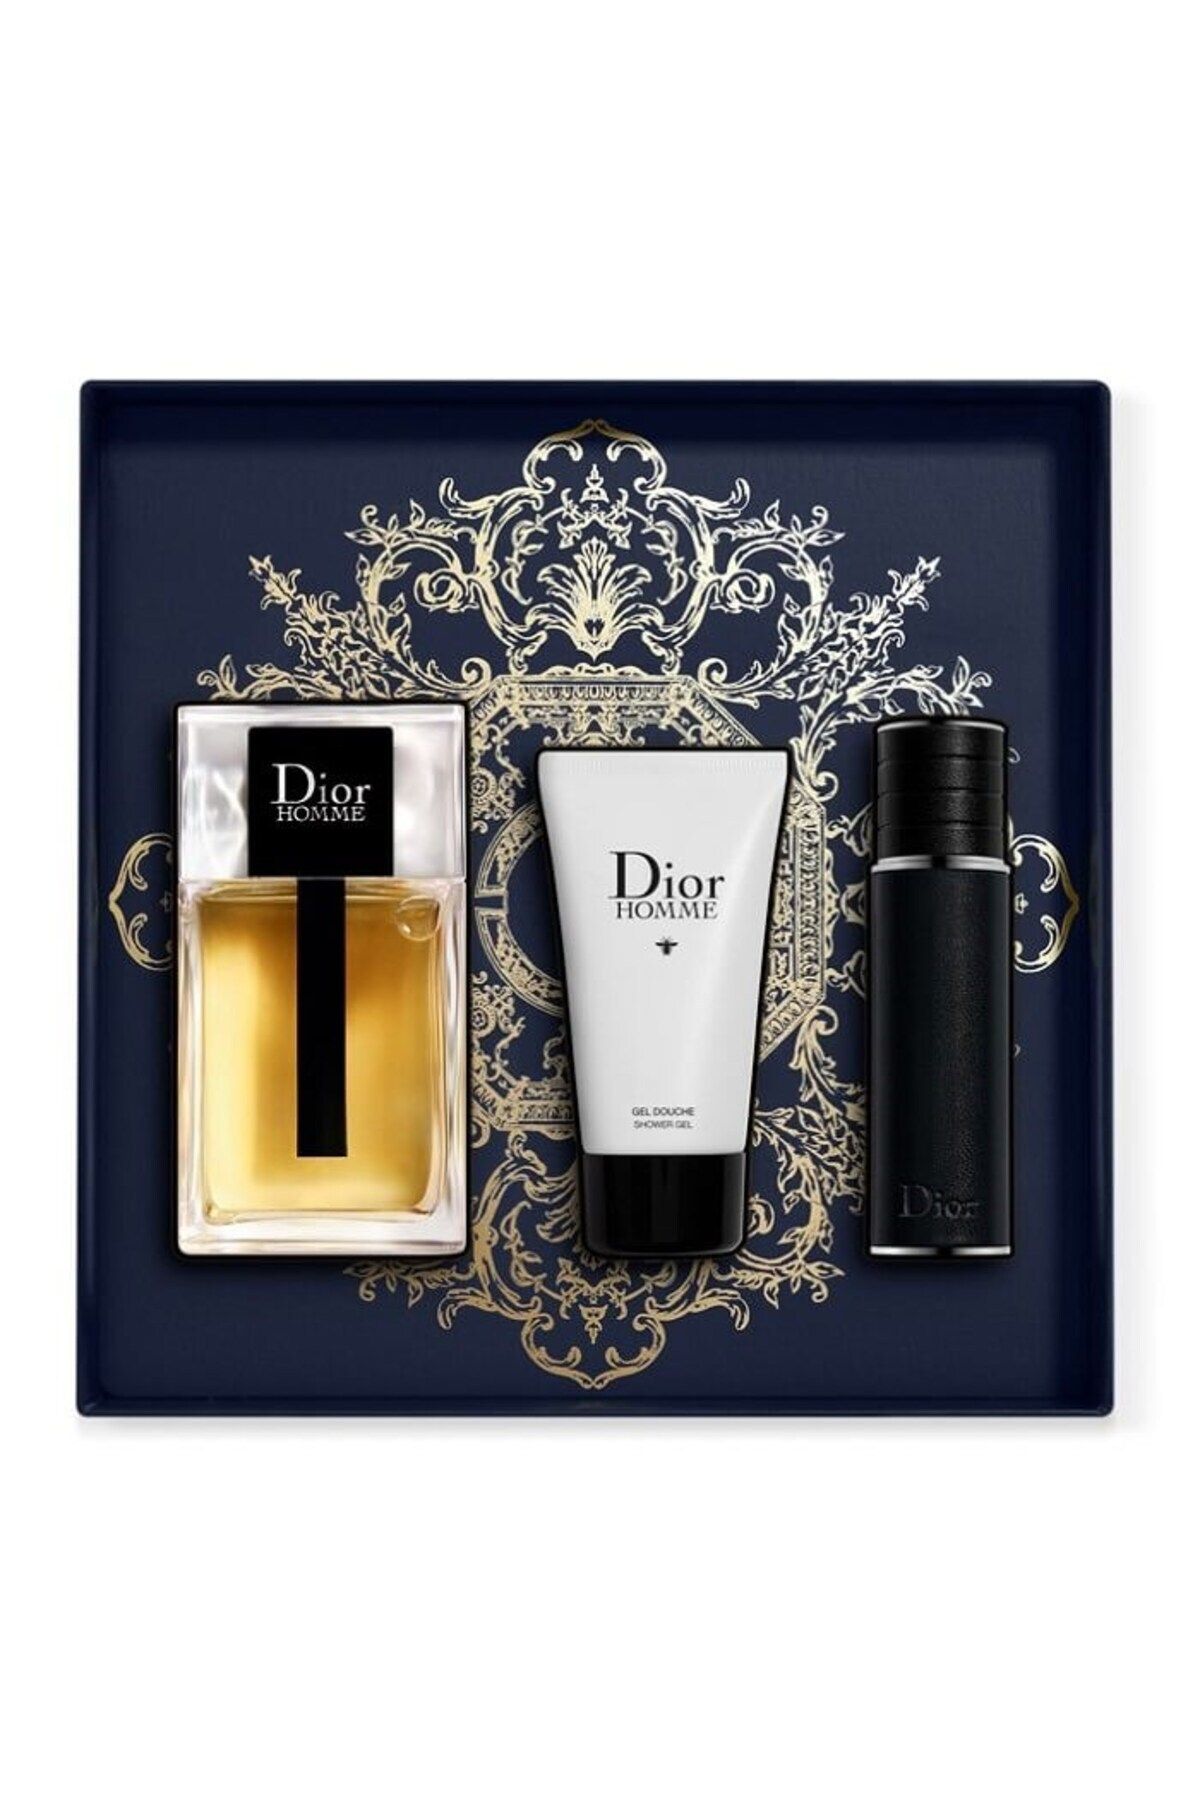 Dior Erkeklere Özel Homme Parfüm Edt 100 Ml+shower Gel 50 Ml+edt 10 Ml 2 lü Set